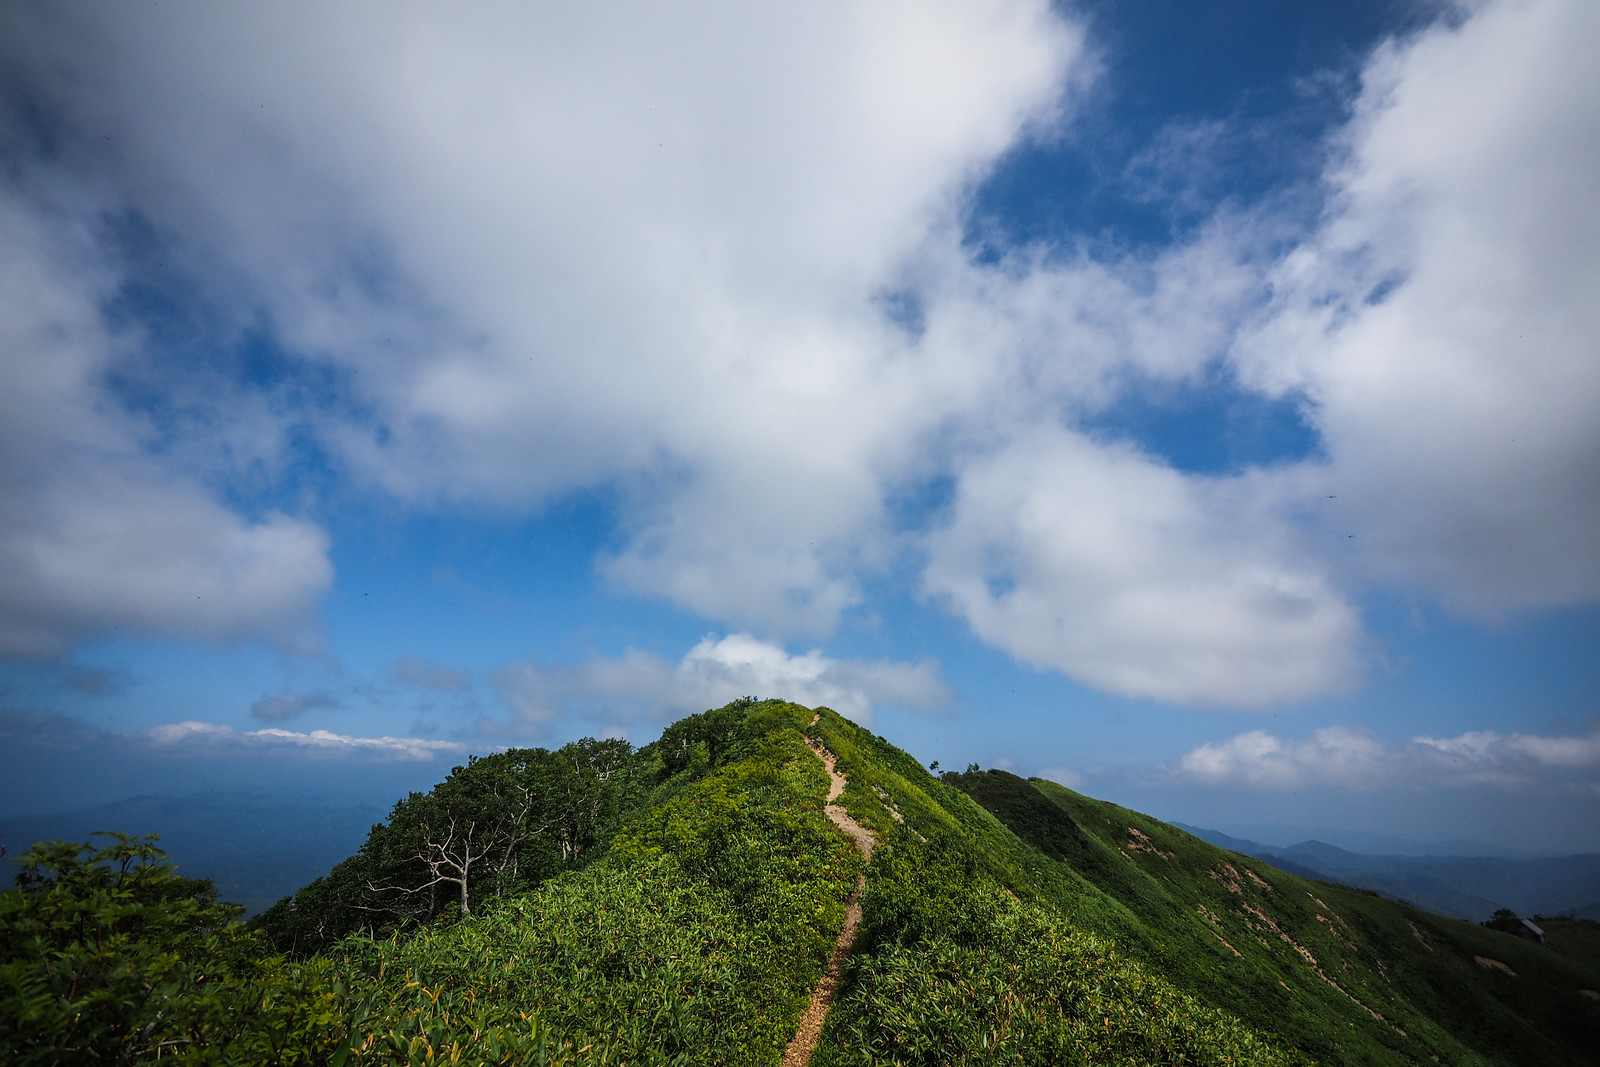 Hiking Mt. Kamuishiri in Hokkaido, Japan